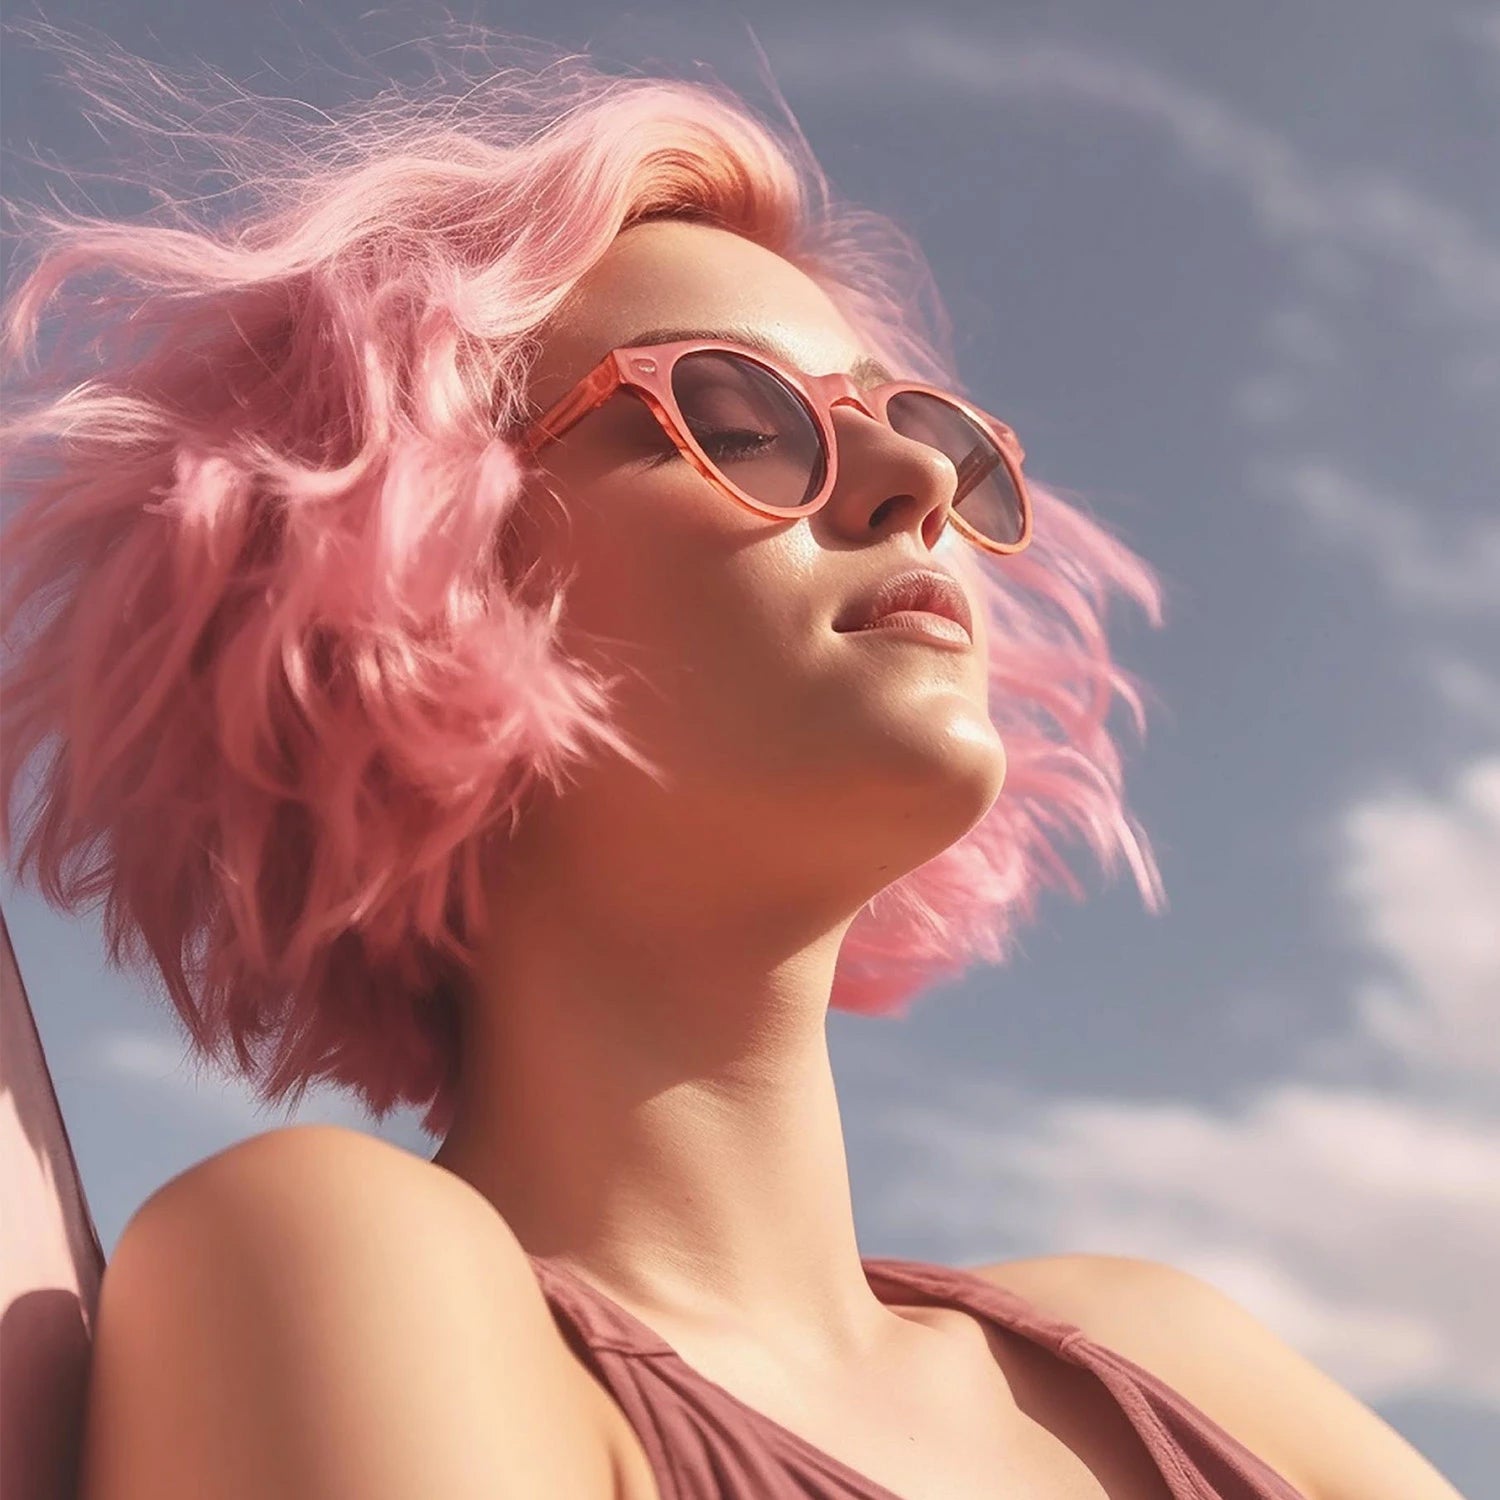 Linea dedicata alla stagione estiva. In evidenza una ragazza dai capelli rosa mentre prende il sole.